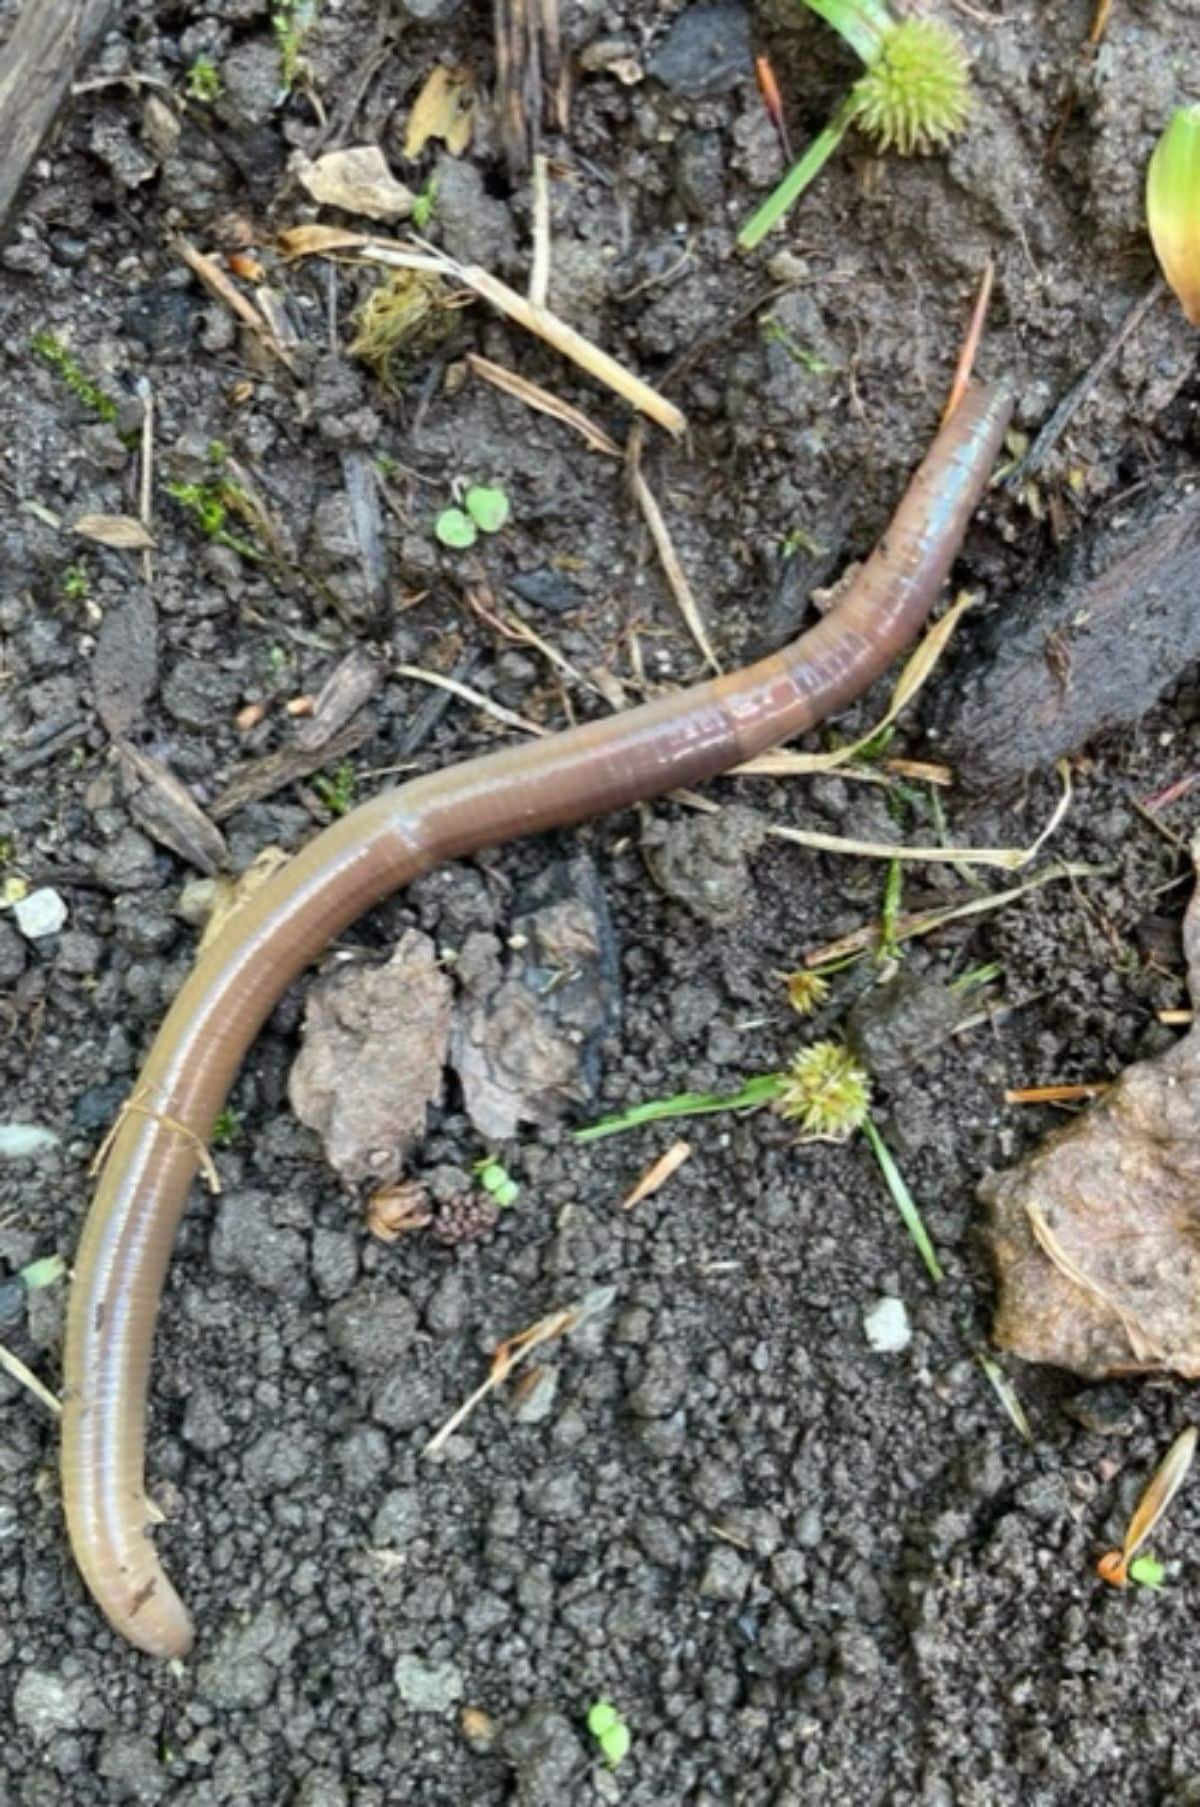 An Asian jumping worm